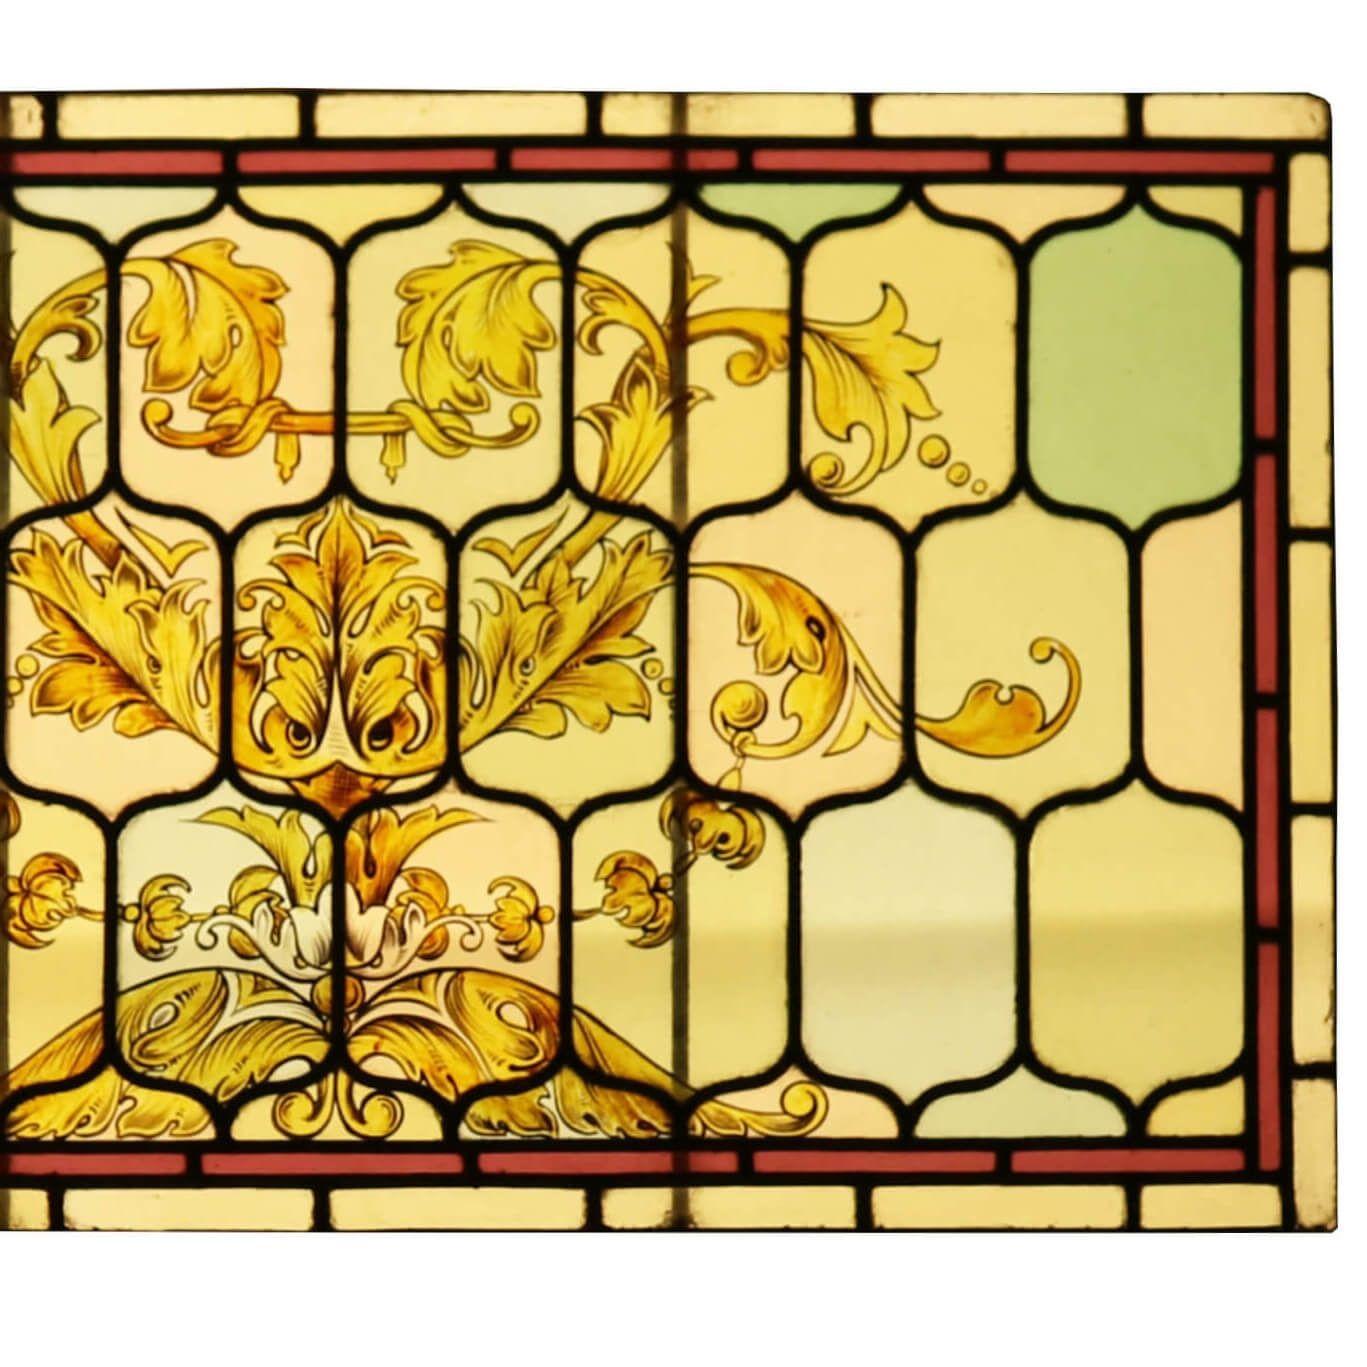 Un panneau de vitrail antique magnifiquement peint à la main dans le style victorien avec un design floral détaillé. Nous disposons d'un autre panneau presque identique ; veuillez nous contacter pour plus de détails.

Âgé de plus de 130 ans, ce